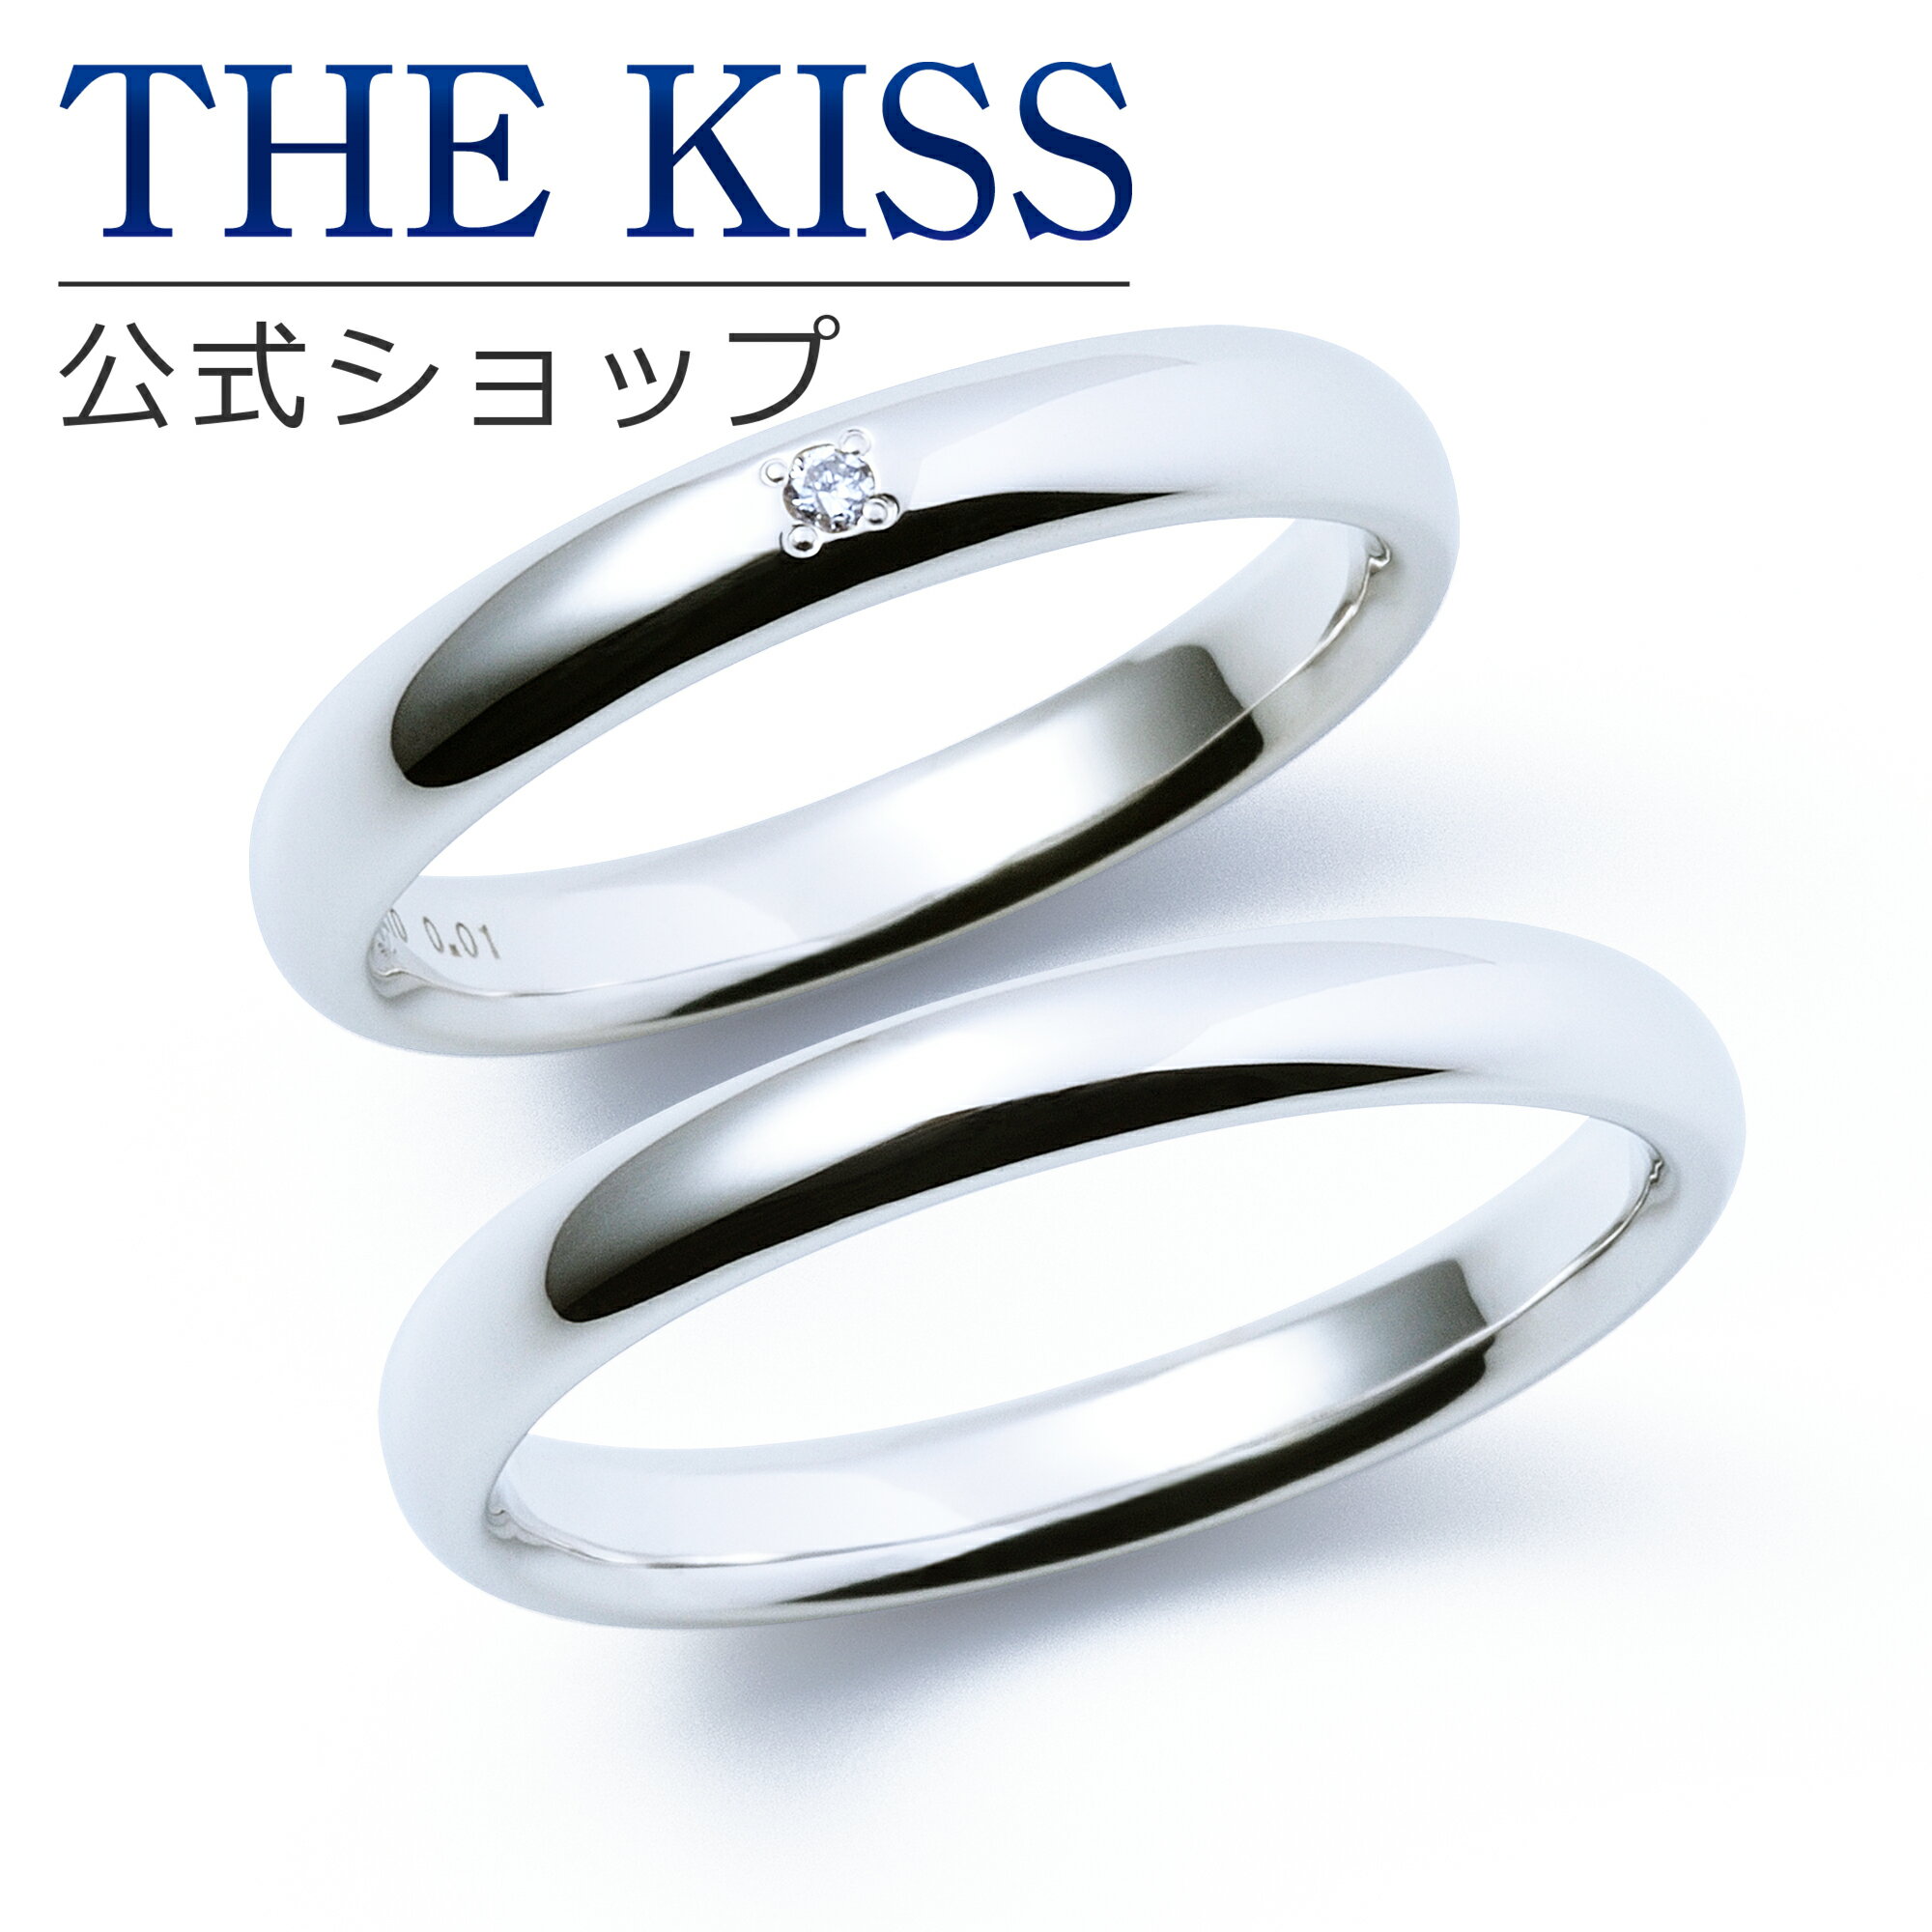 【ラッピング無料】【刻印無料】【THE KISS Anniversary】 K10 ホワイトゴールド マリッジ リング 結婚指輪 ペアリング wg THE KISS ザキッス リング・指輪 7621122041-7621122042 セット シンプル 男性 女性 2個セット 甲丸 ブライダル